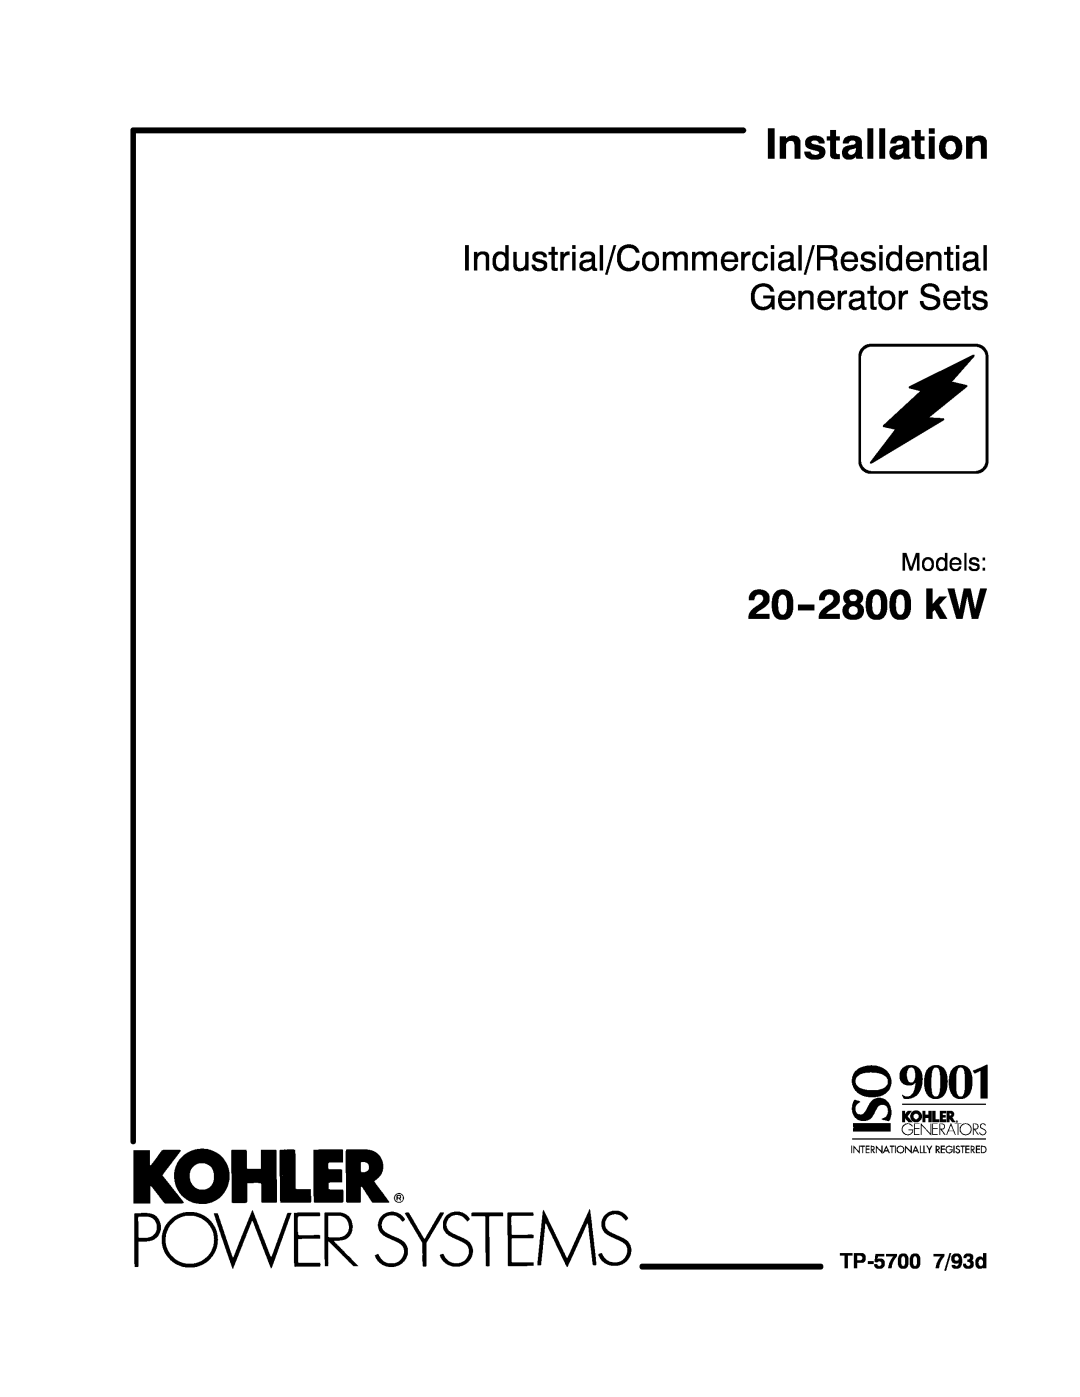 Kohler 20--2800 kW manual Models, TP-5700 7/93d, Installation, 20-2800 kW 